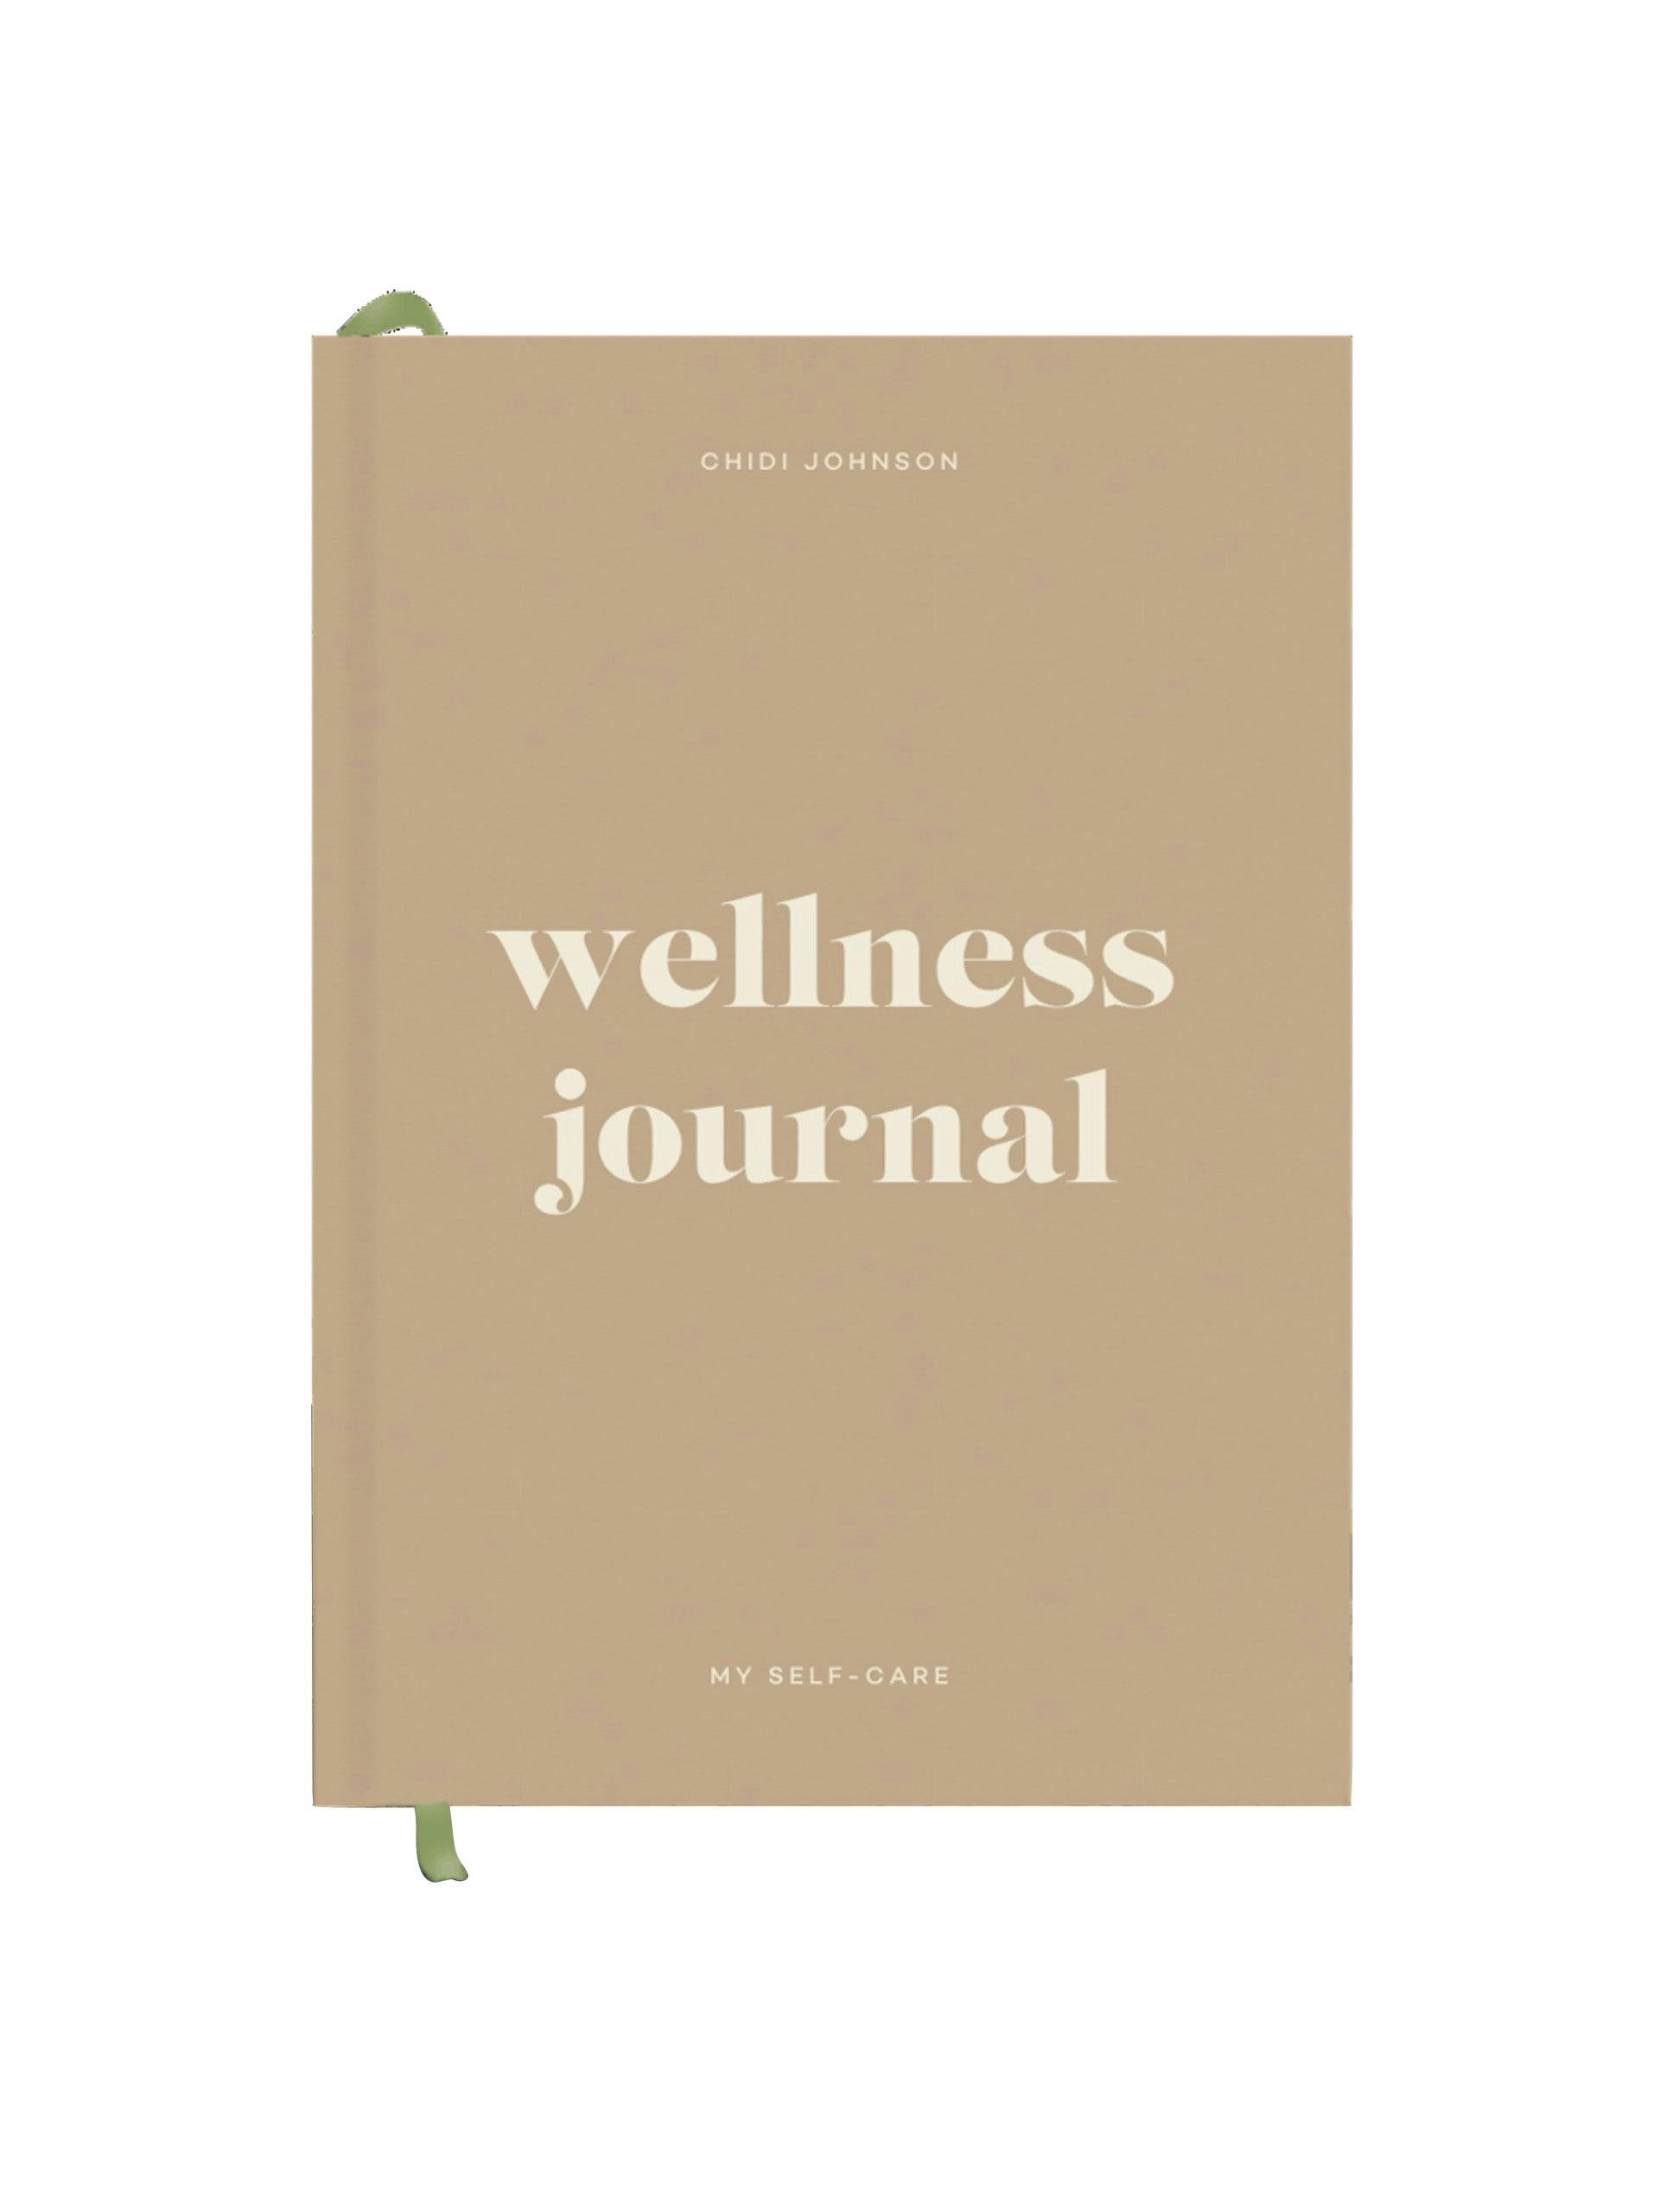 Wellness journal